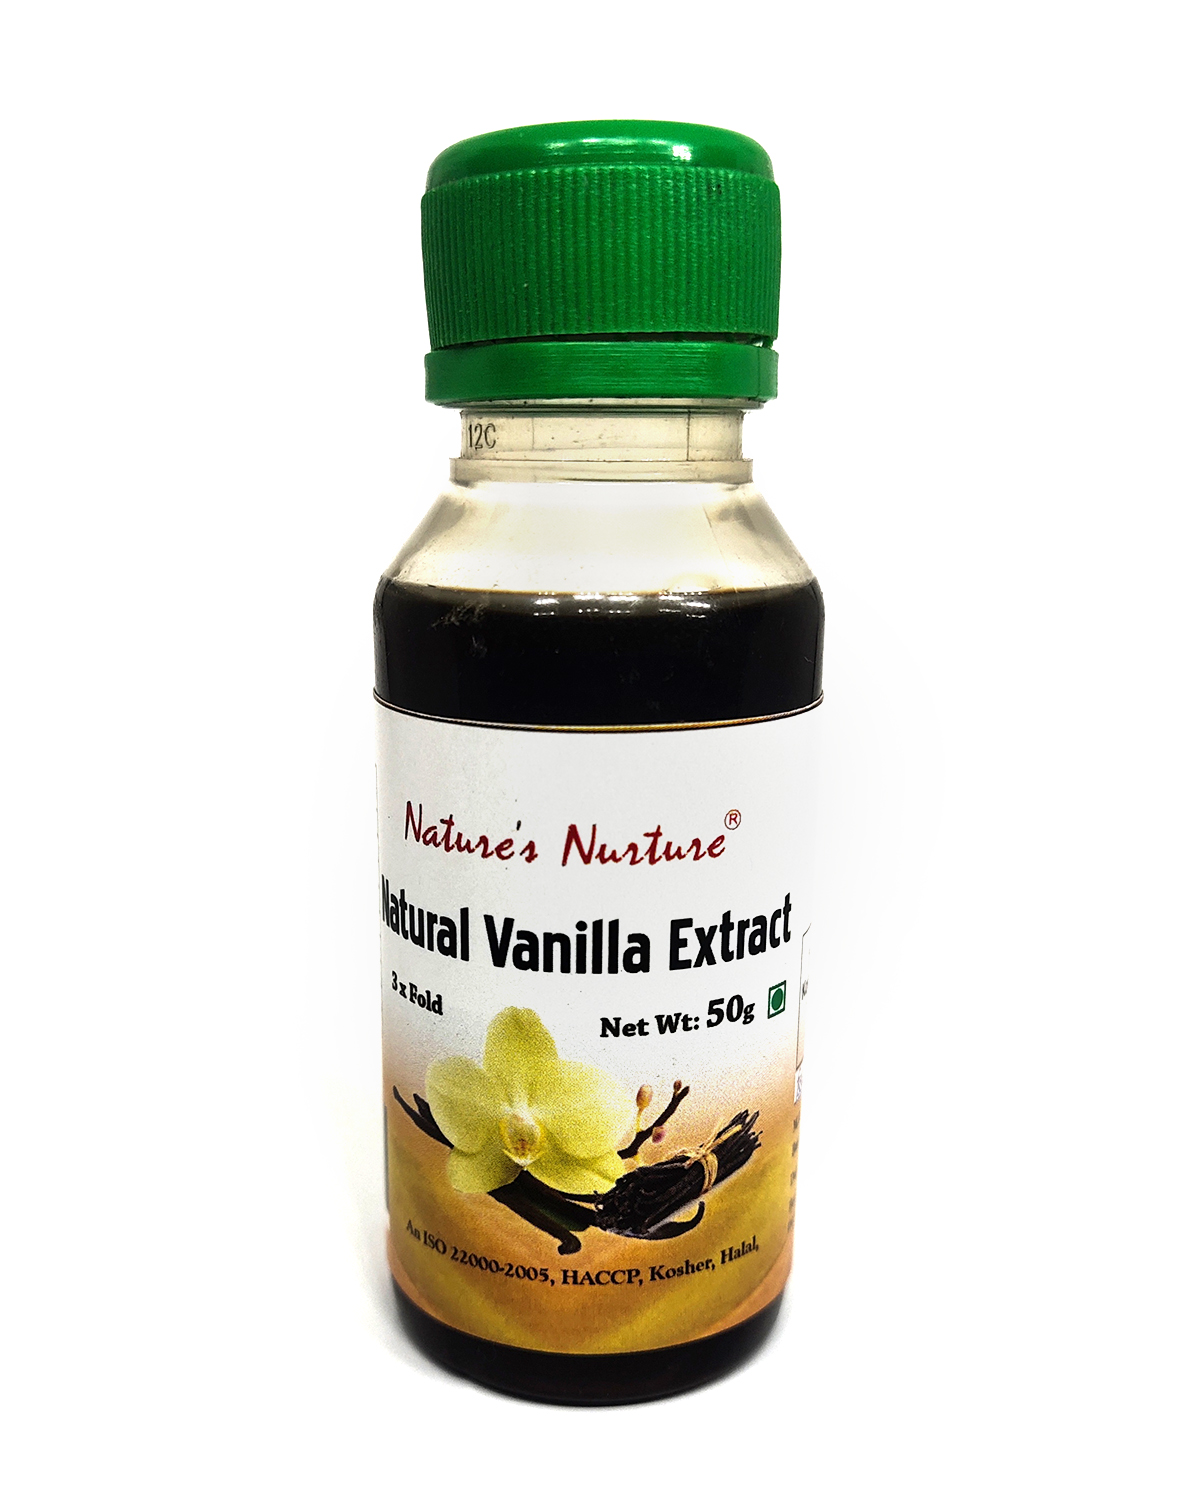 NaturesNurture Vanilla Extract 3 fold 50gm 1